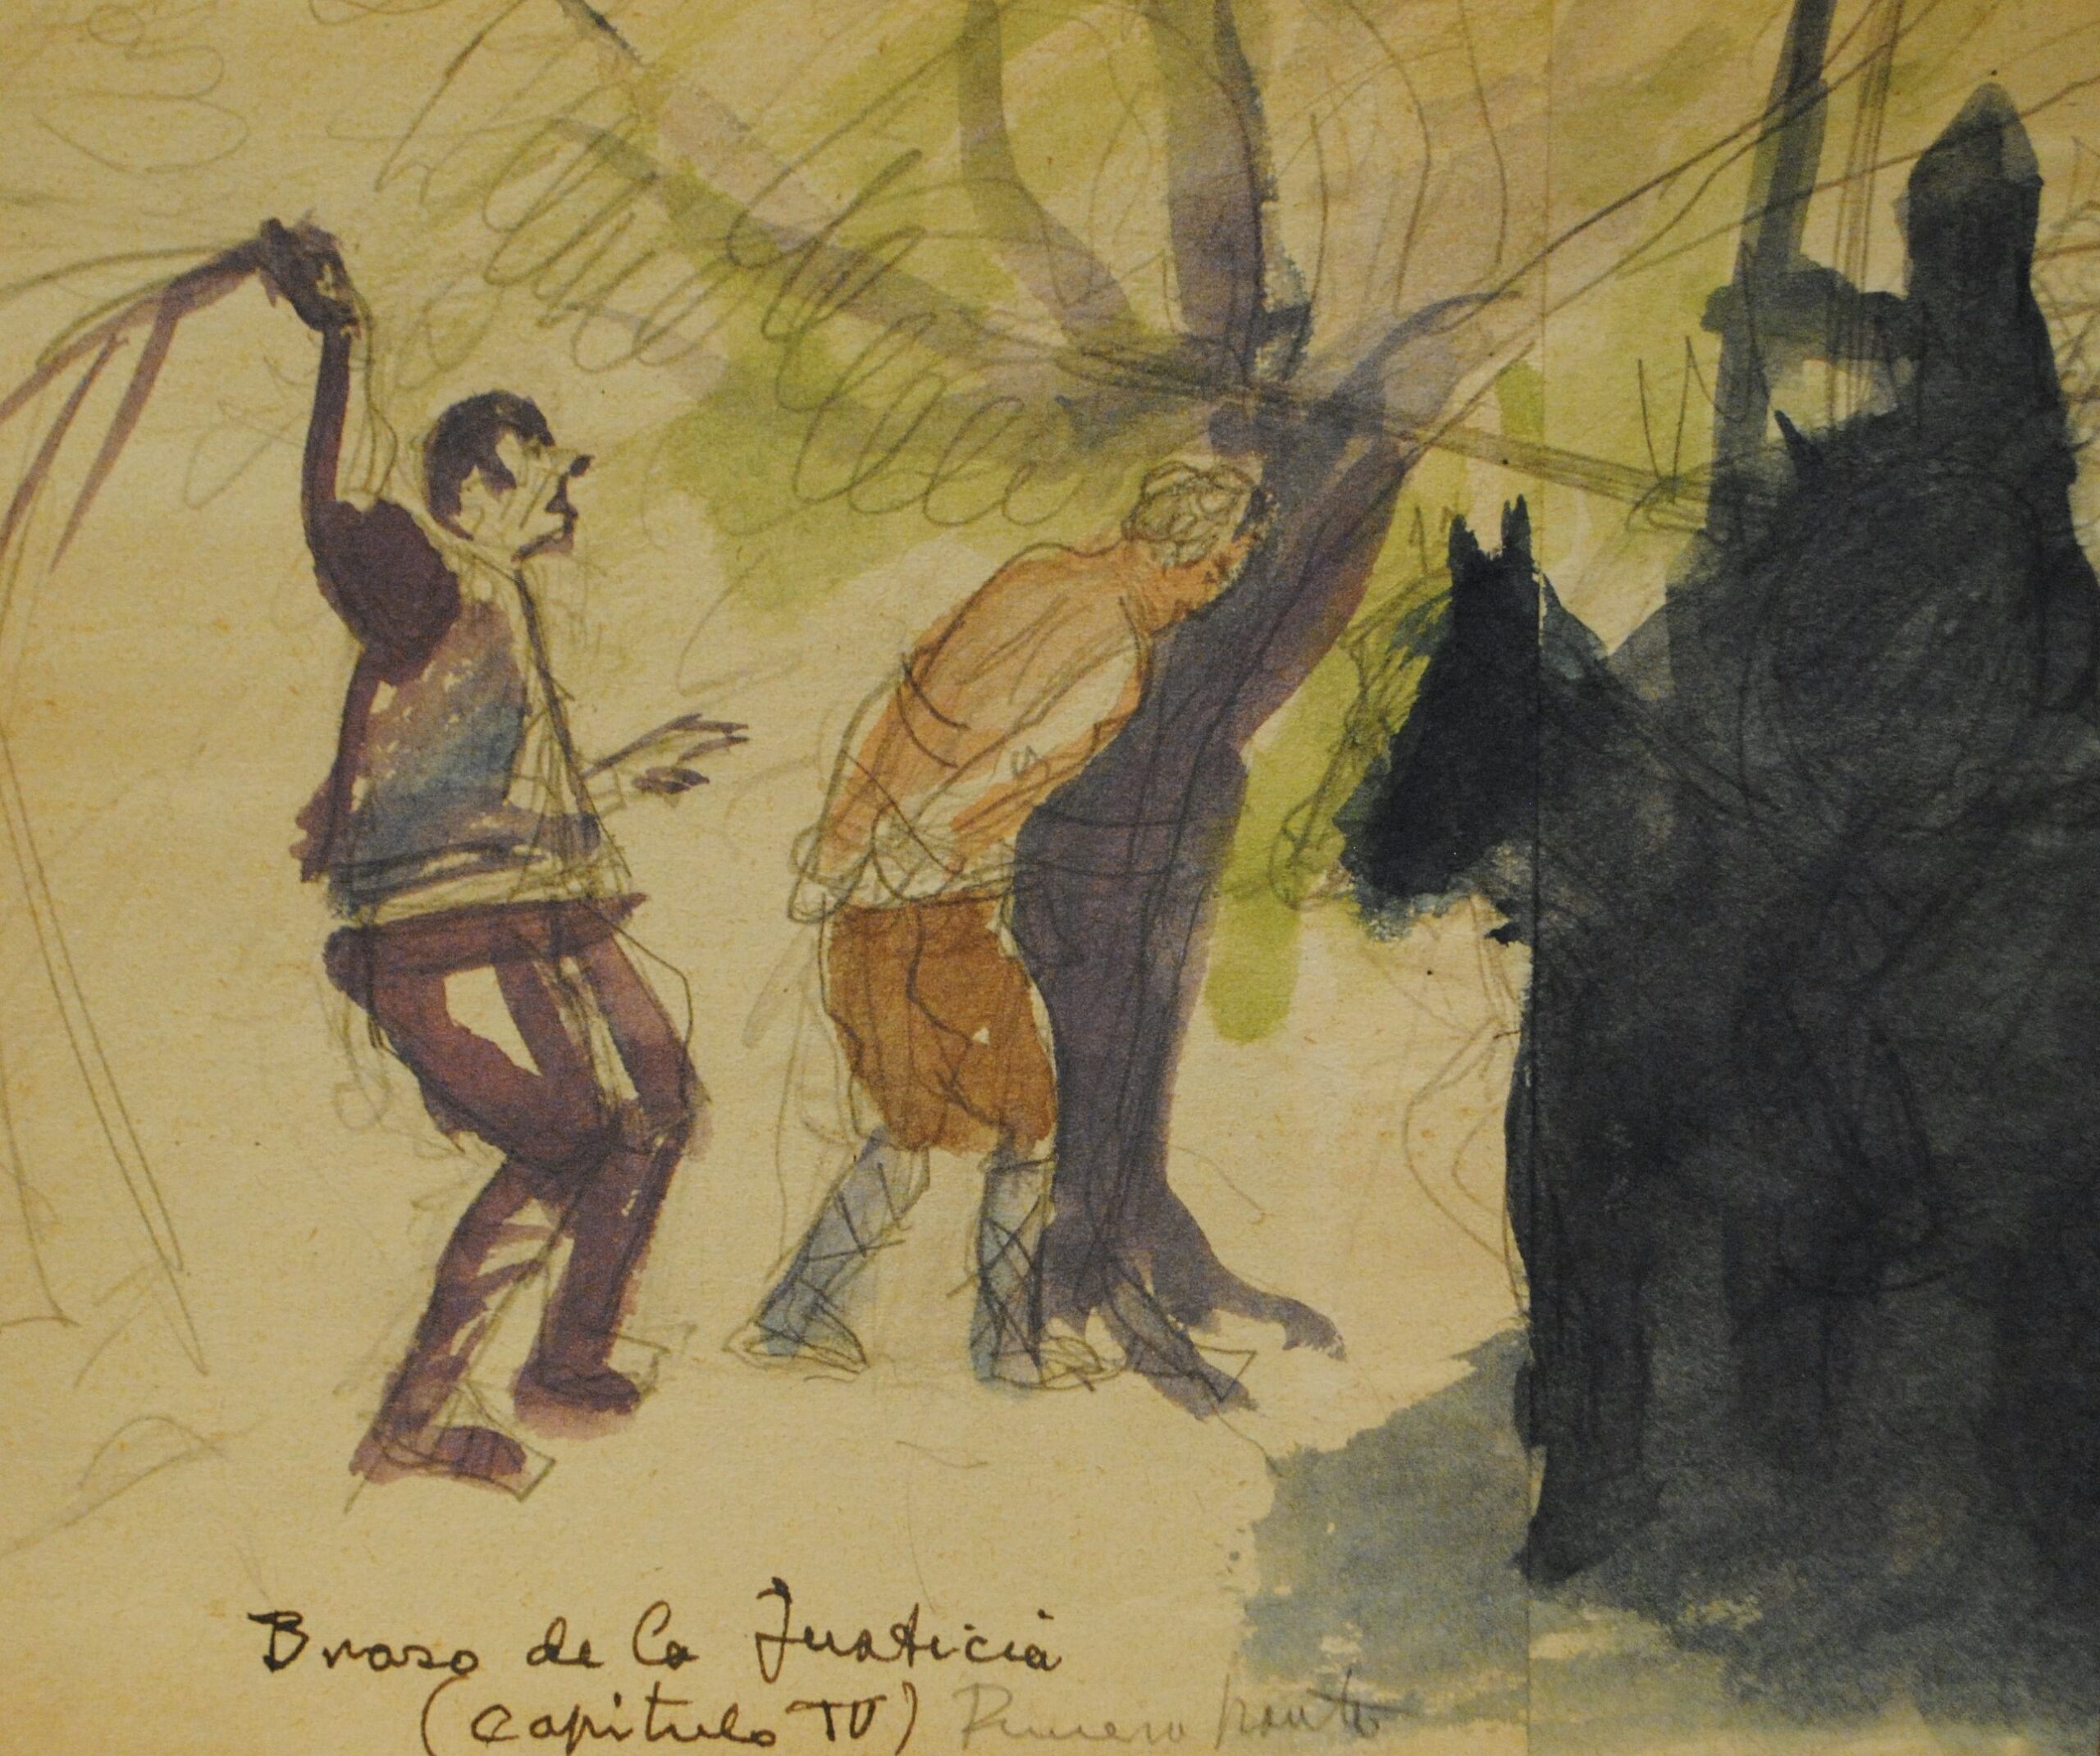 Dibujo de José Manaut. Un hombre fustiga a otro. El fustigado lleva las manos atadas a la espalda y se reposa sobre un árbol. Escrito abajo: Brazo de la Justicia, capítulo IV.